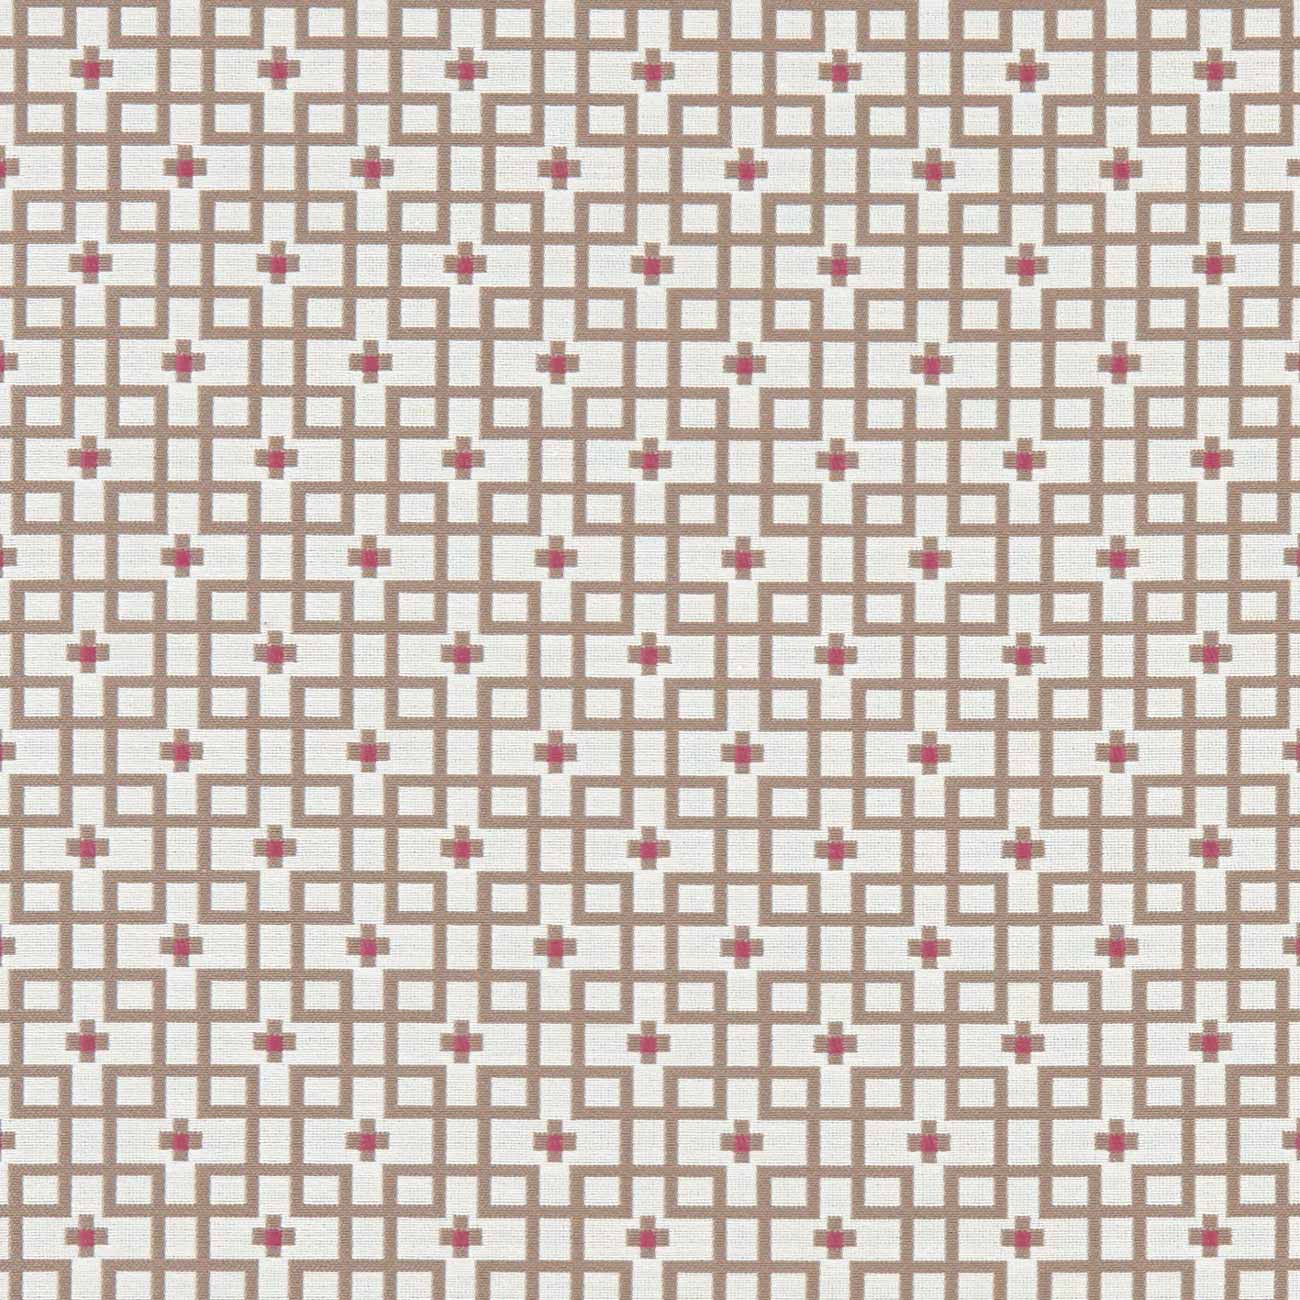 Axis Raspberry Fabric by Clarke & Clarke